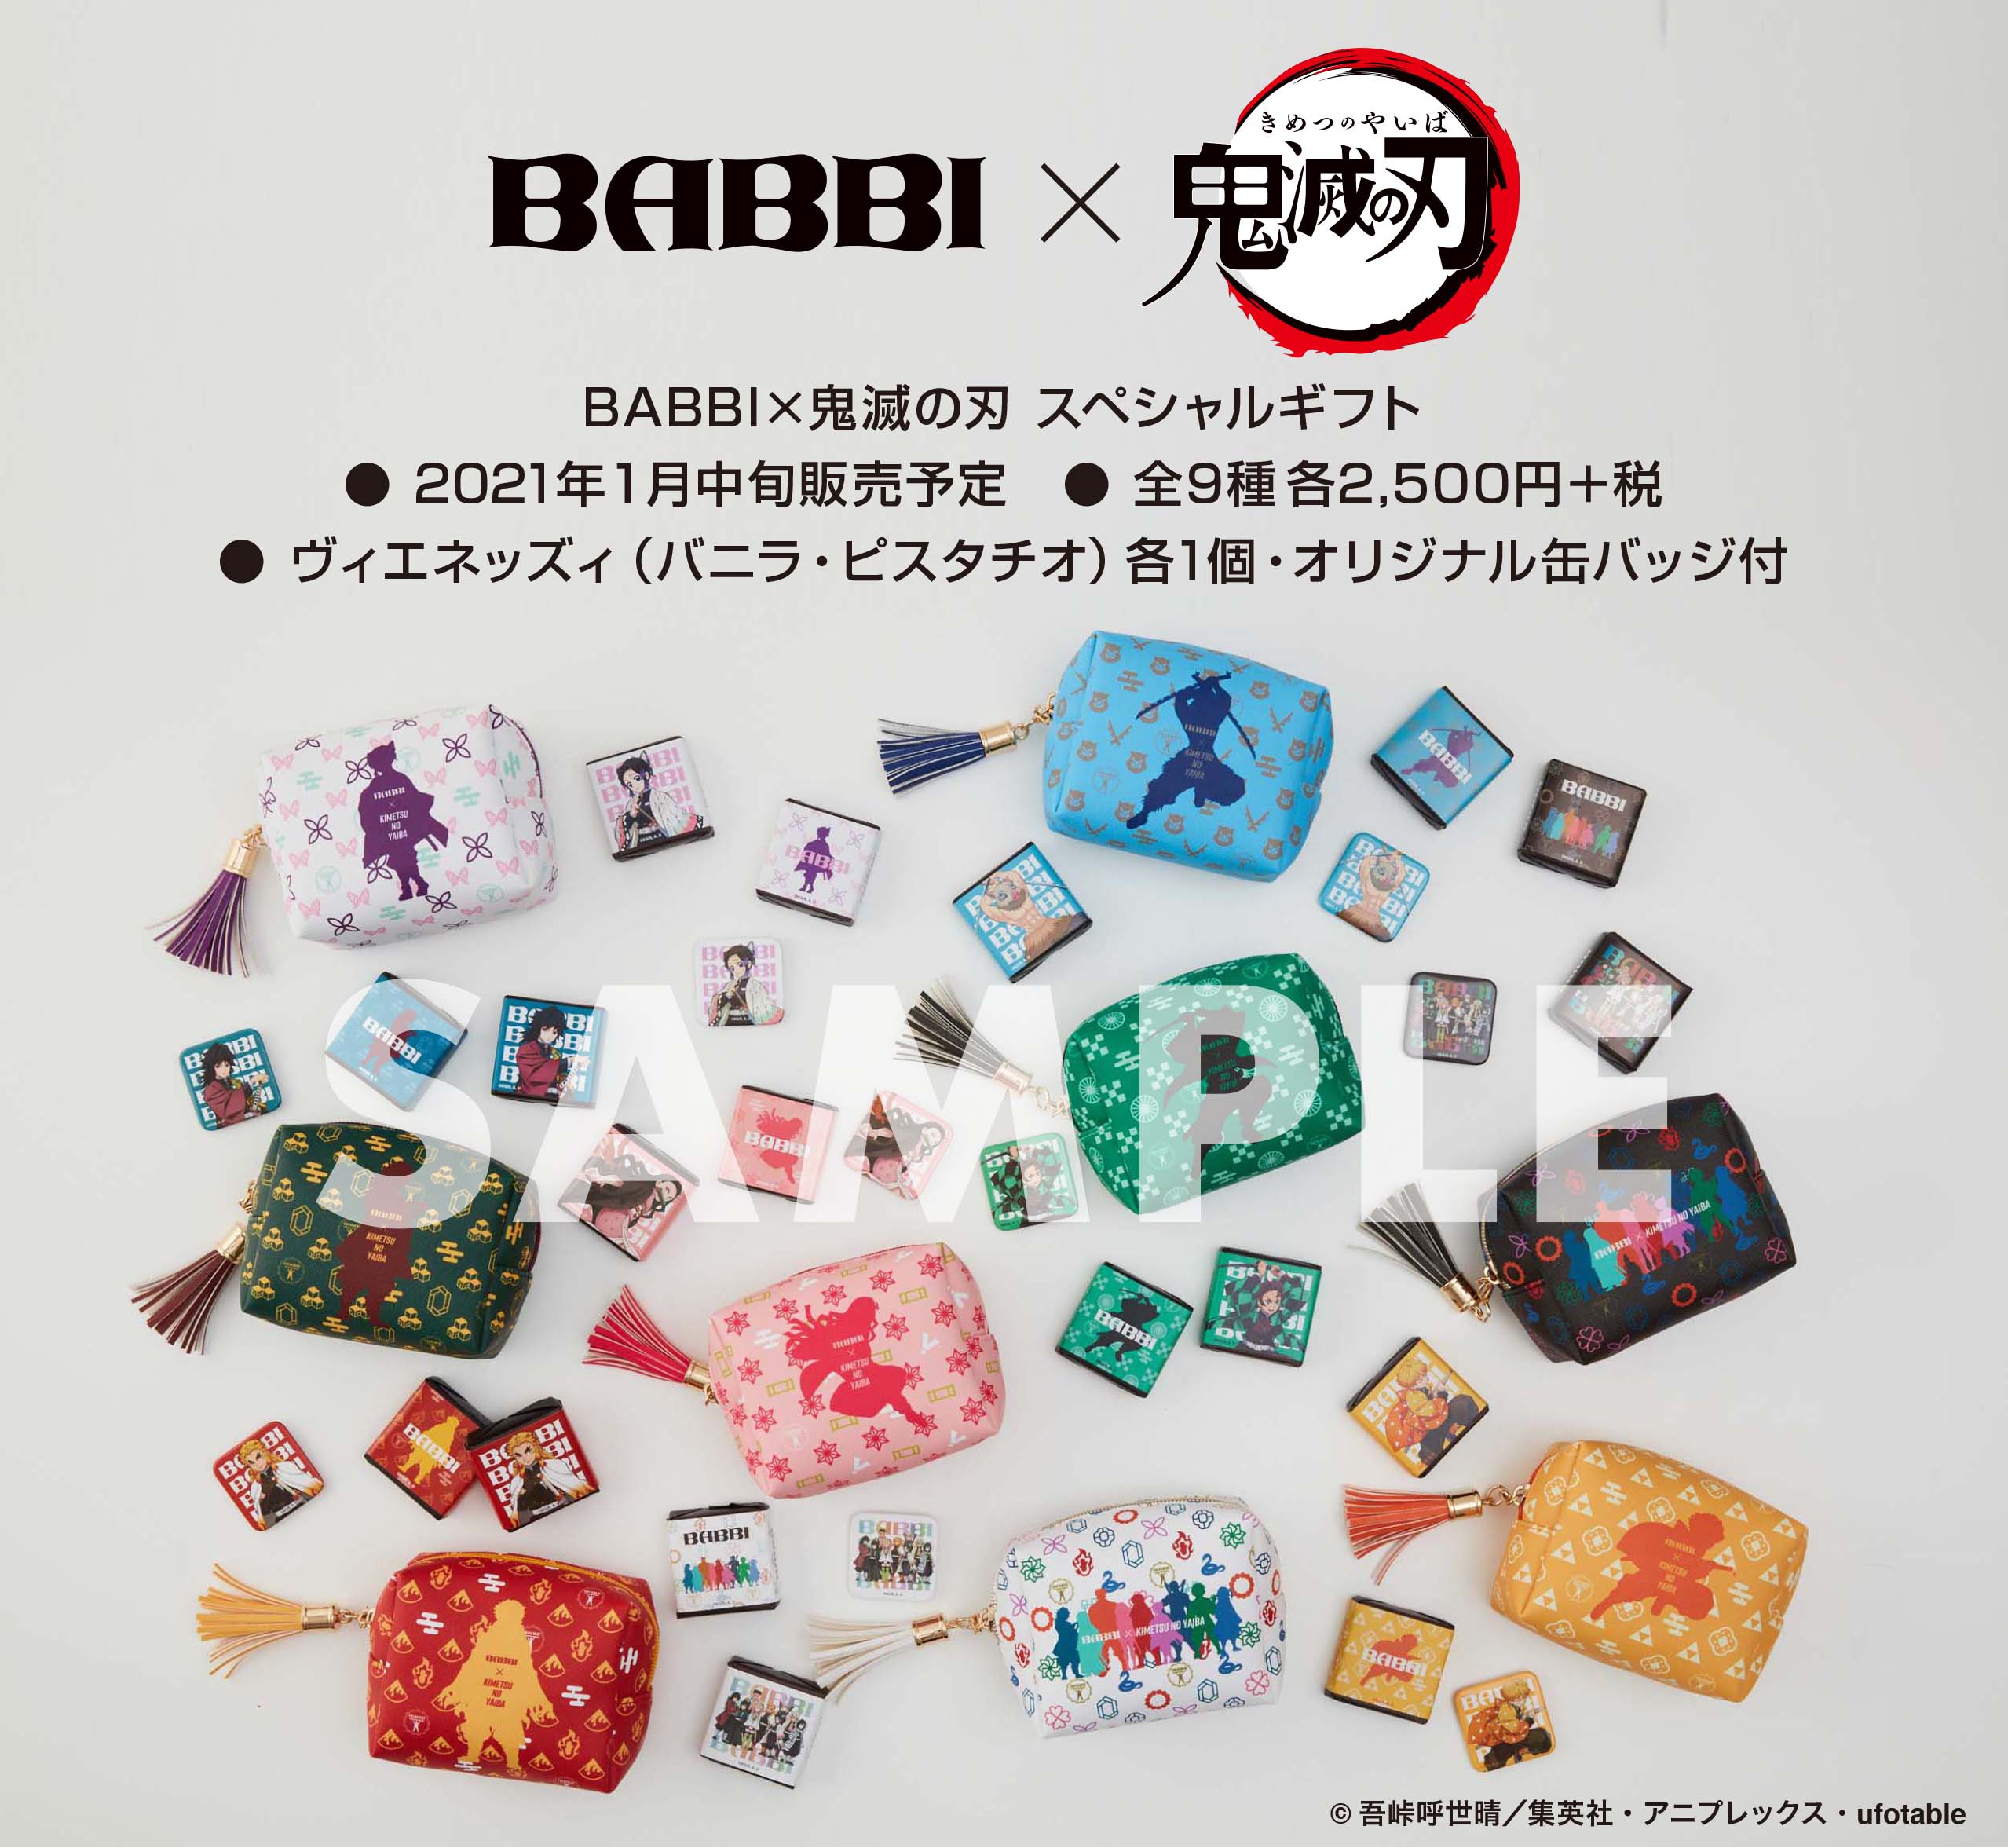 鬼滅の刃 × BABBI バレンタイン限定グッズ付きギフト 1月中旬より発売!!